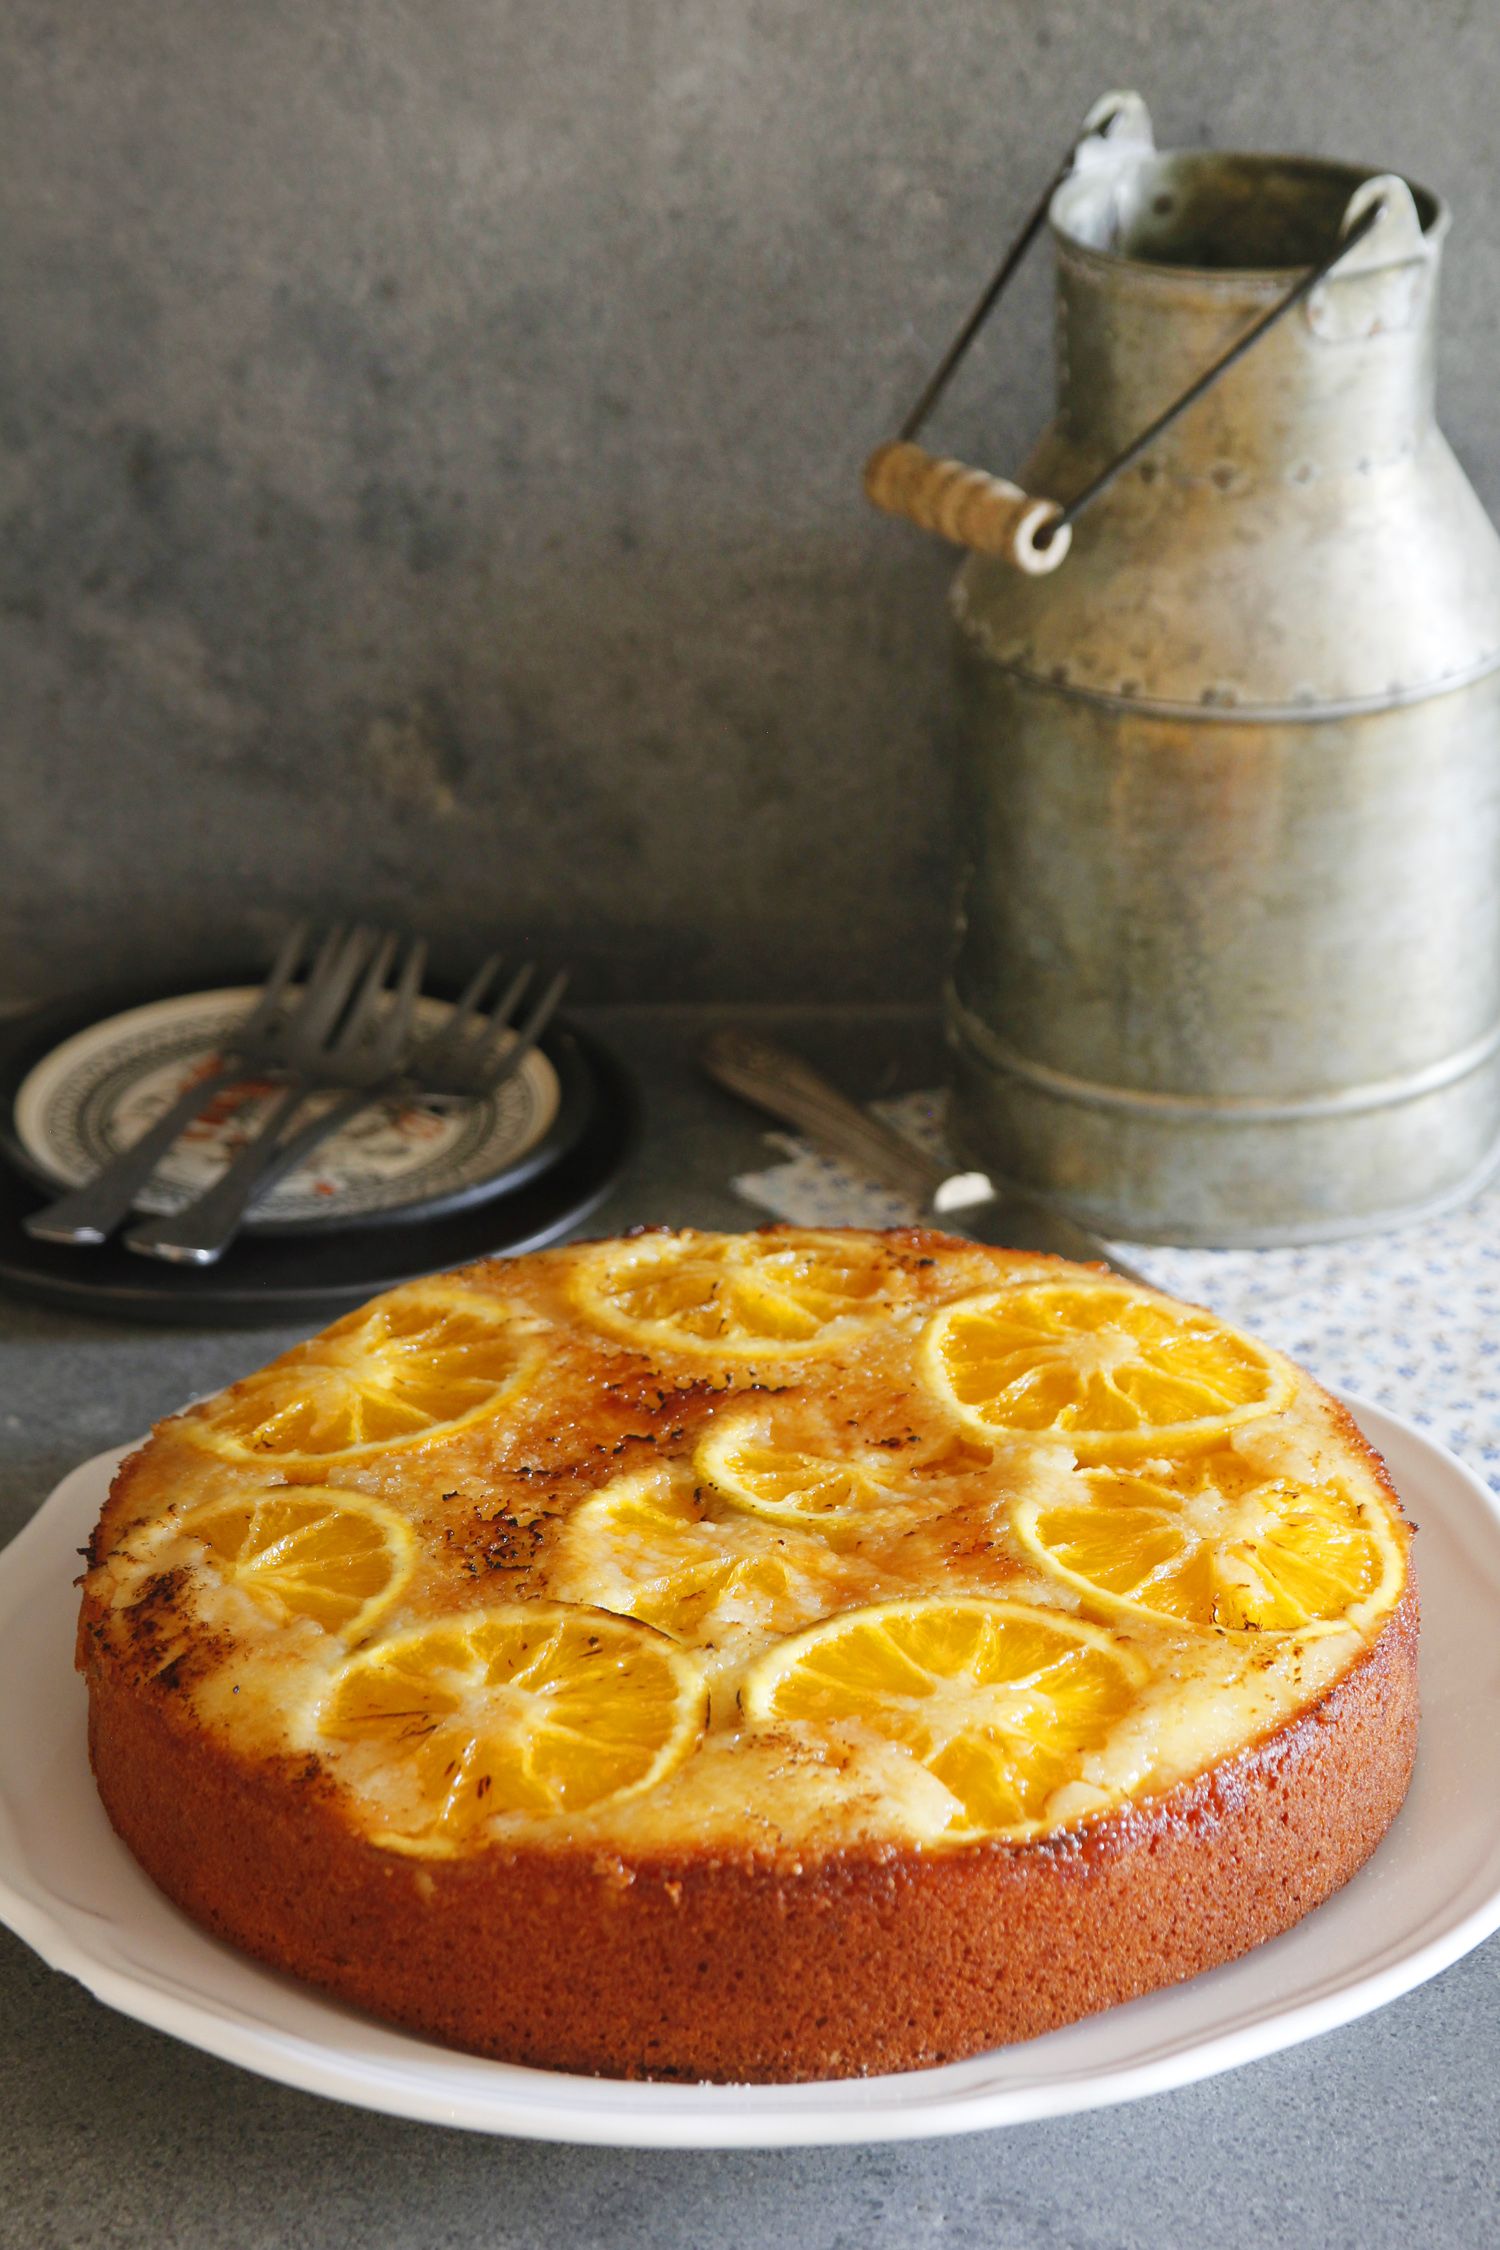 עוגת תפוזים הפוכה | צילום: נטלי לוין